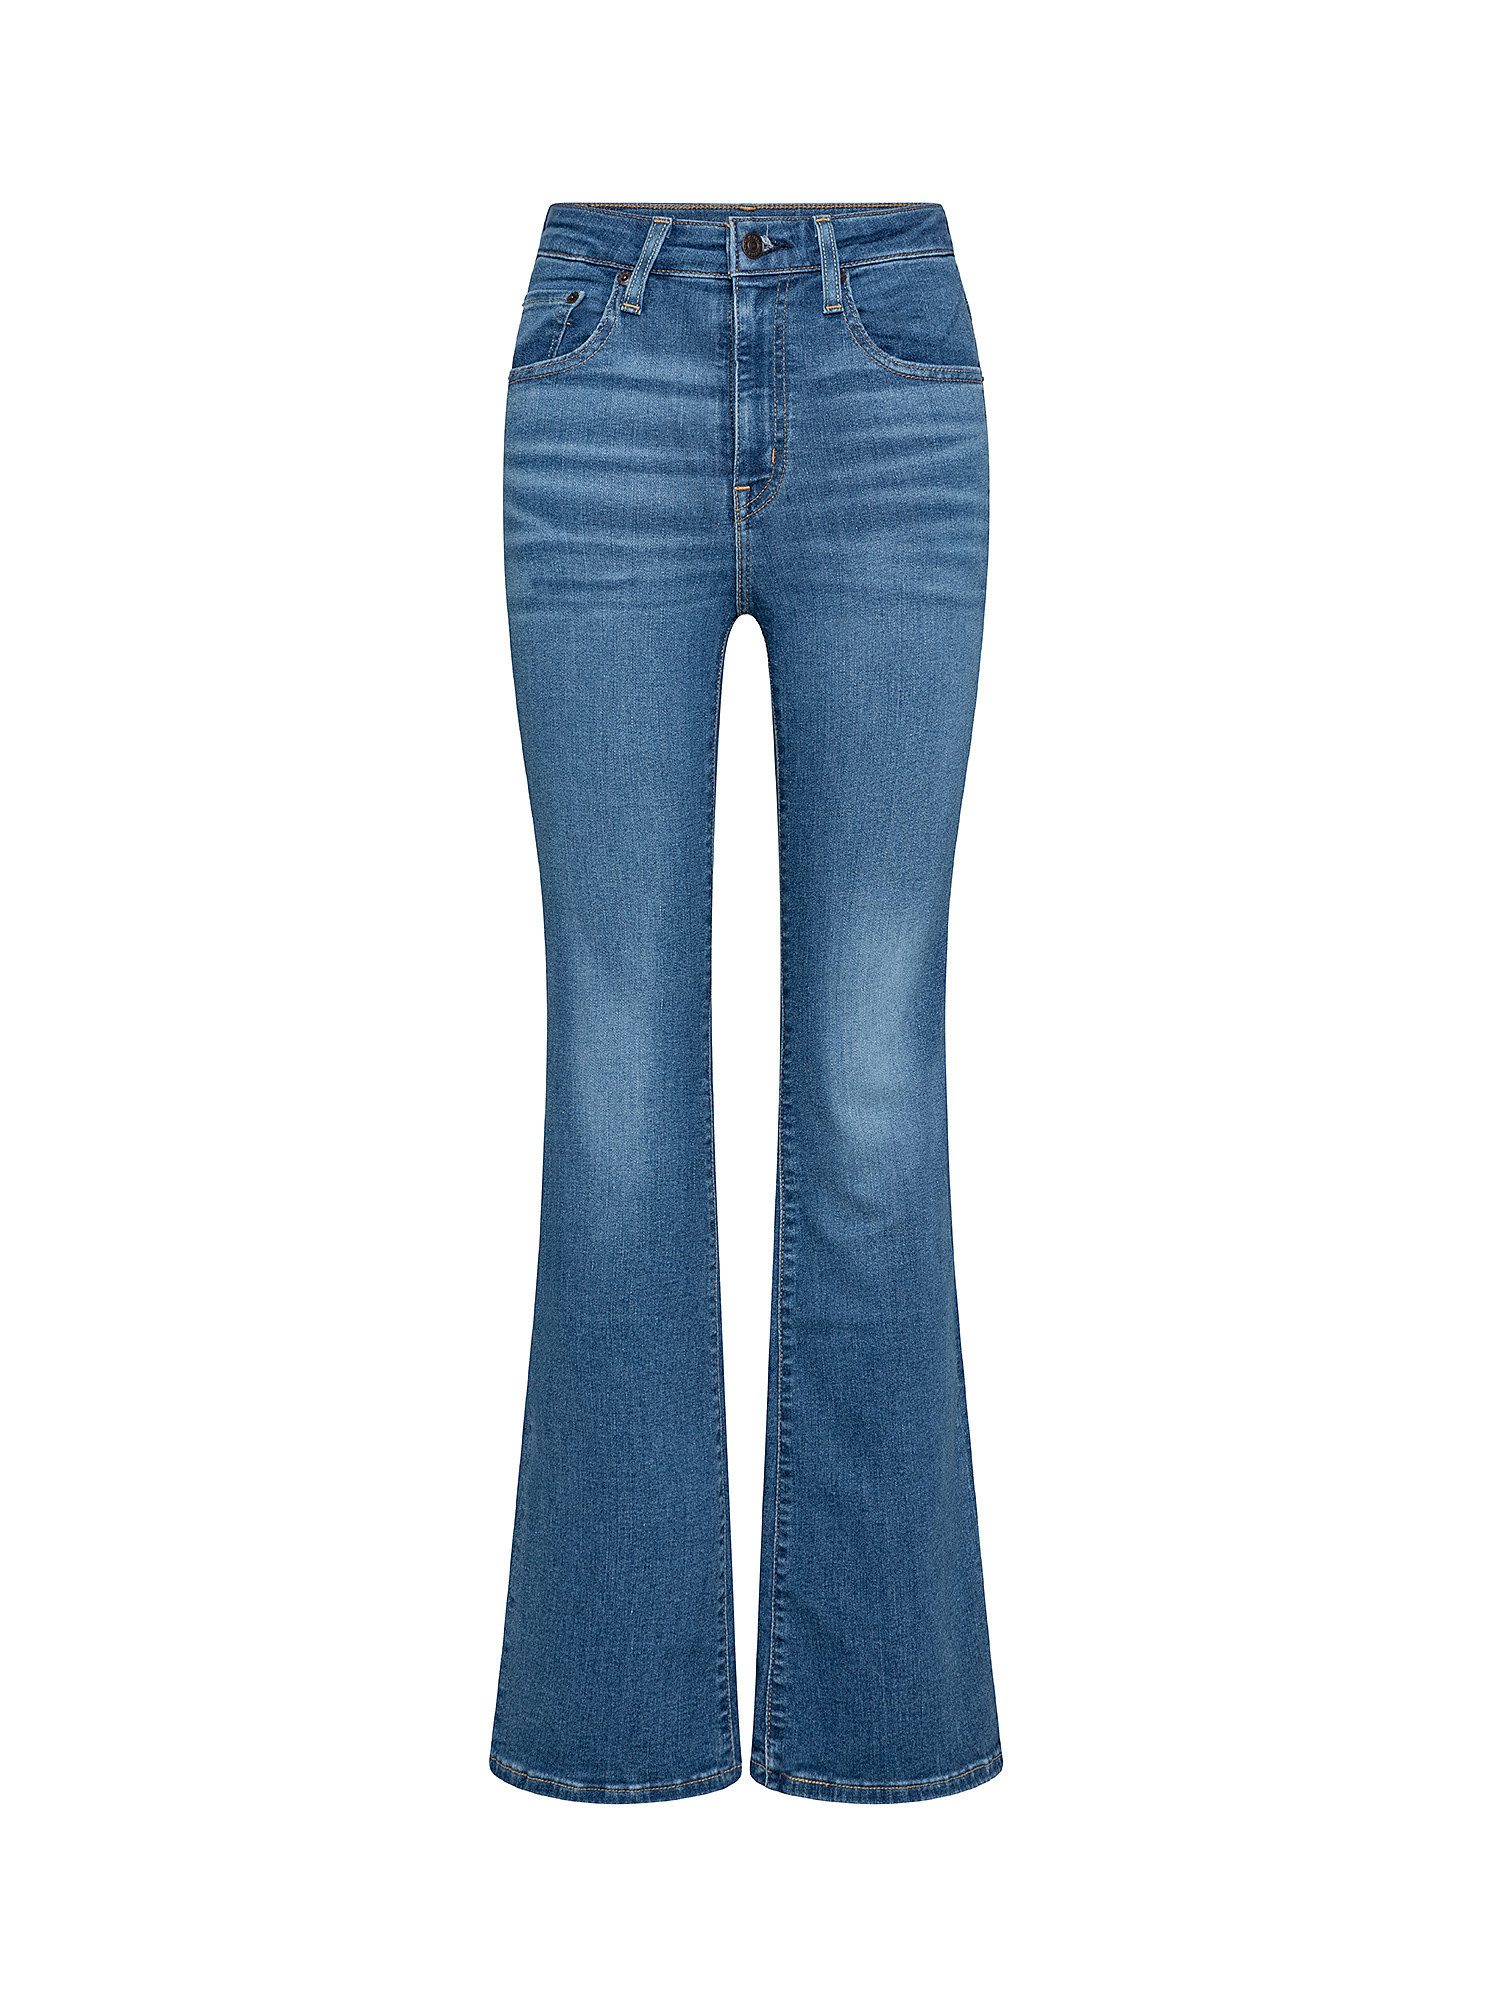 Jeans 726 HR Flare, Blu, large image number 0